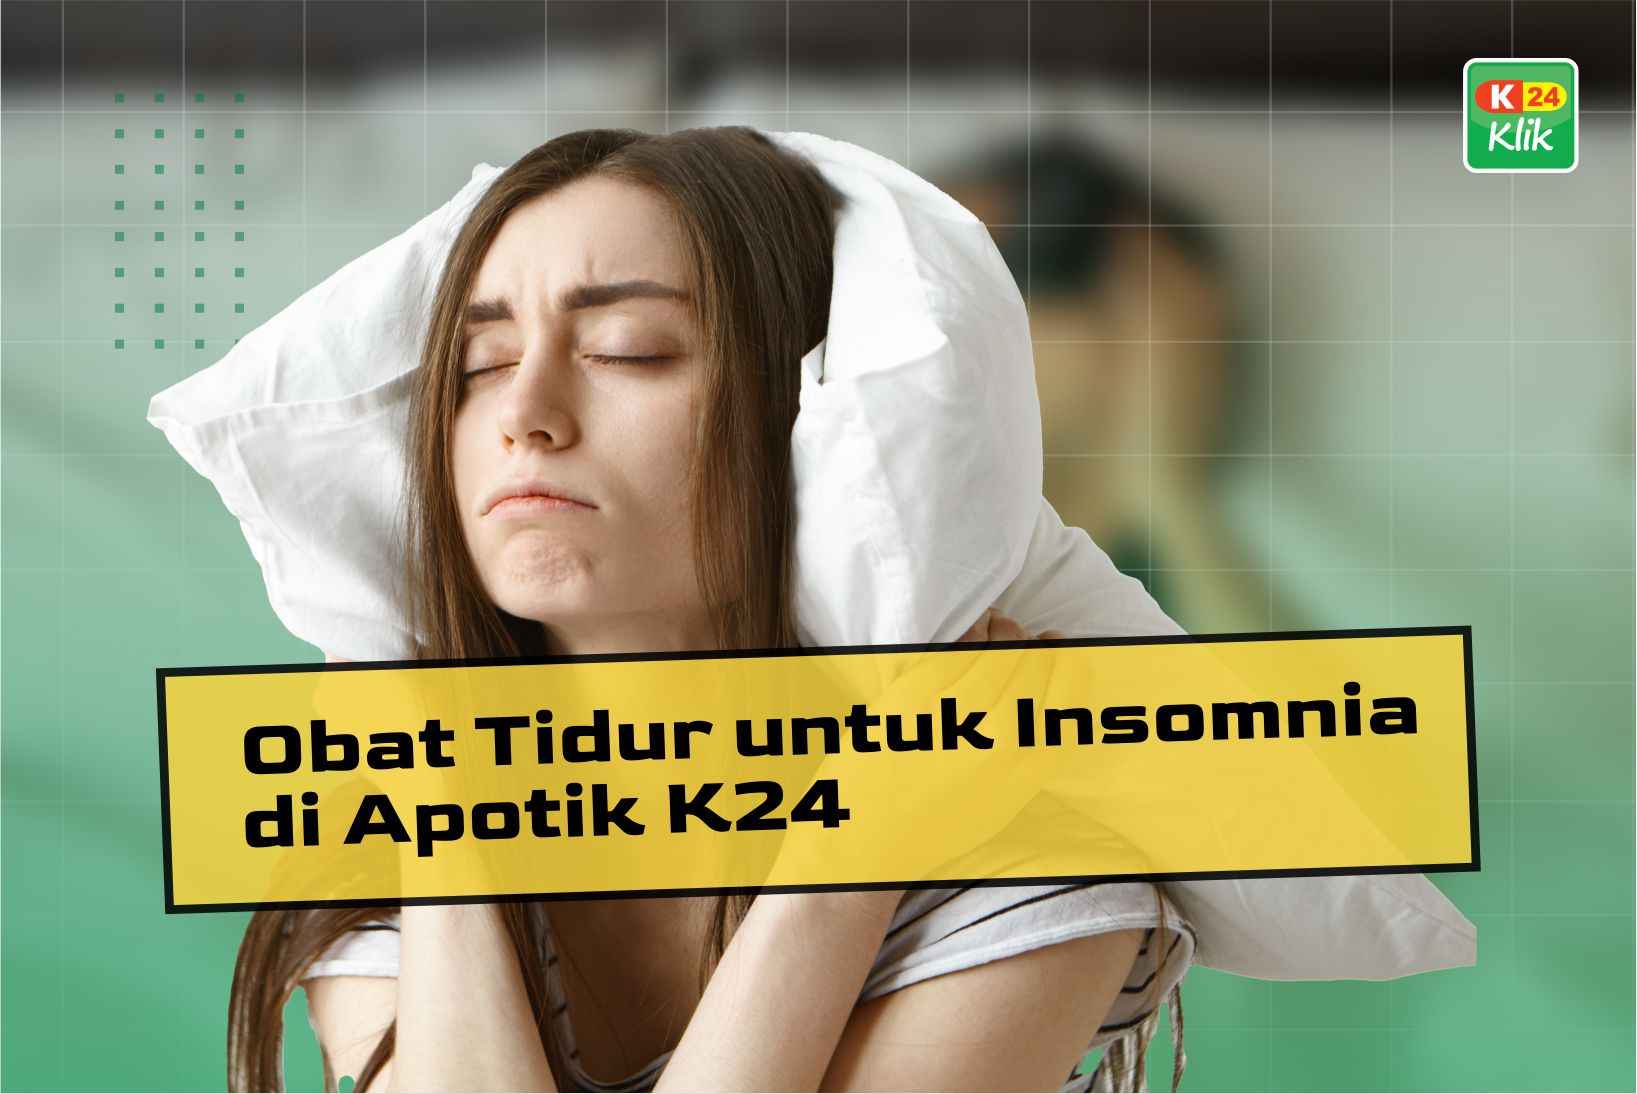 10 Obat Tidur untuk Insomnia di Apotik K24 Paling Ampuh